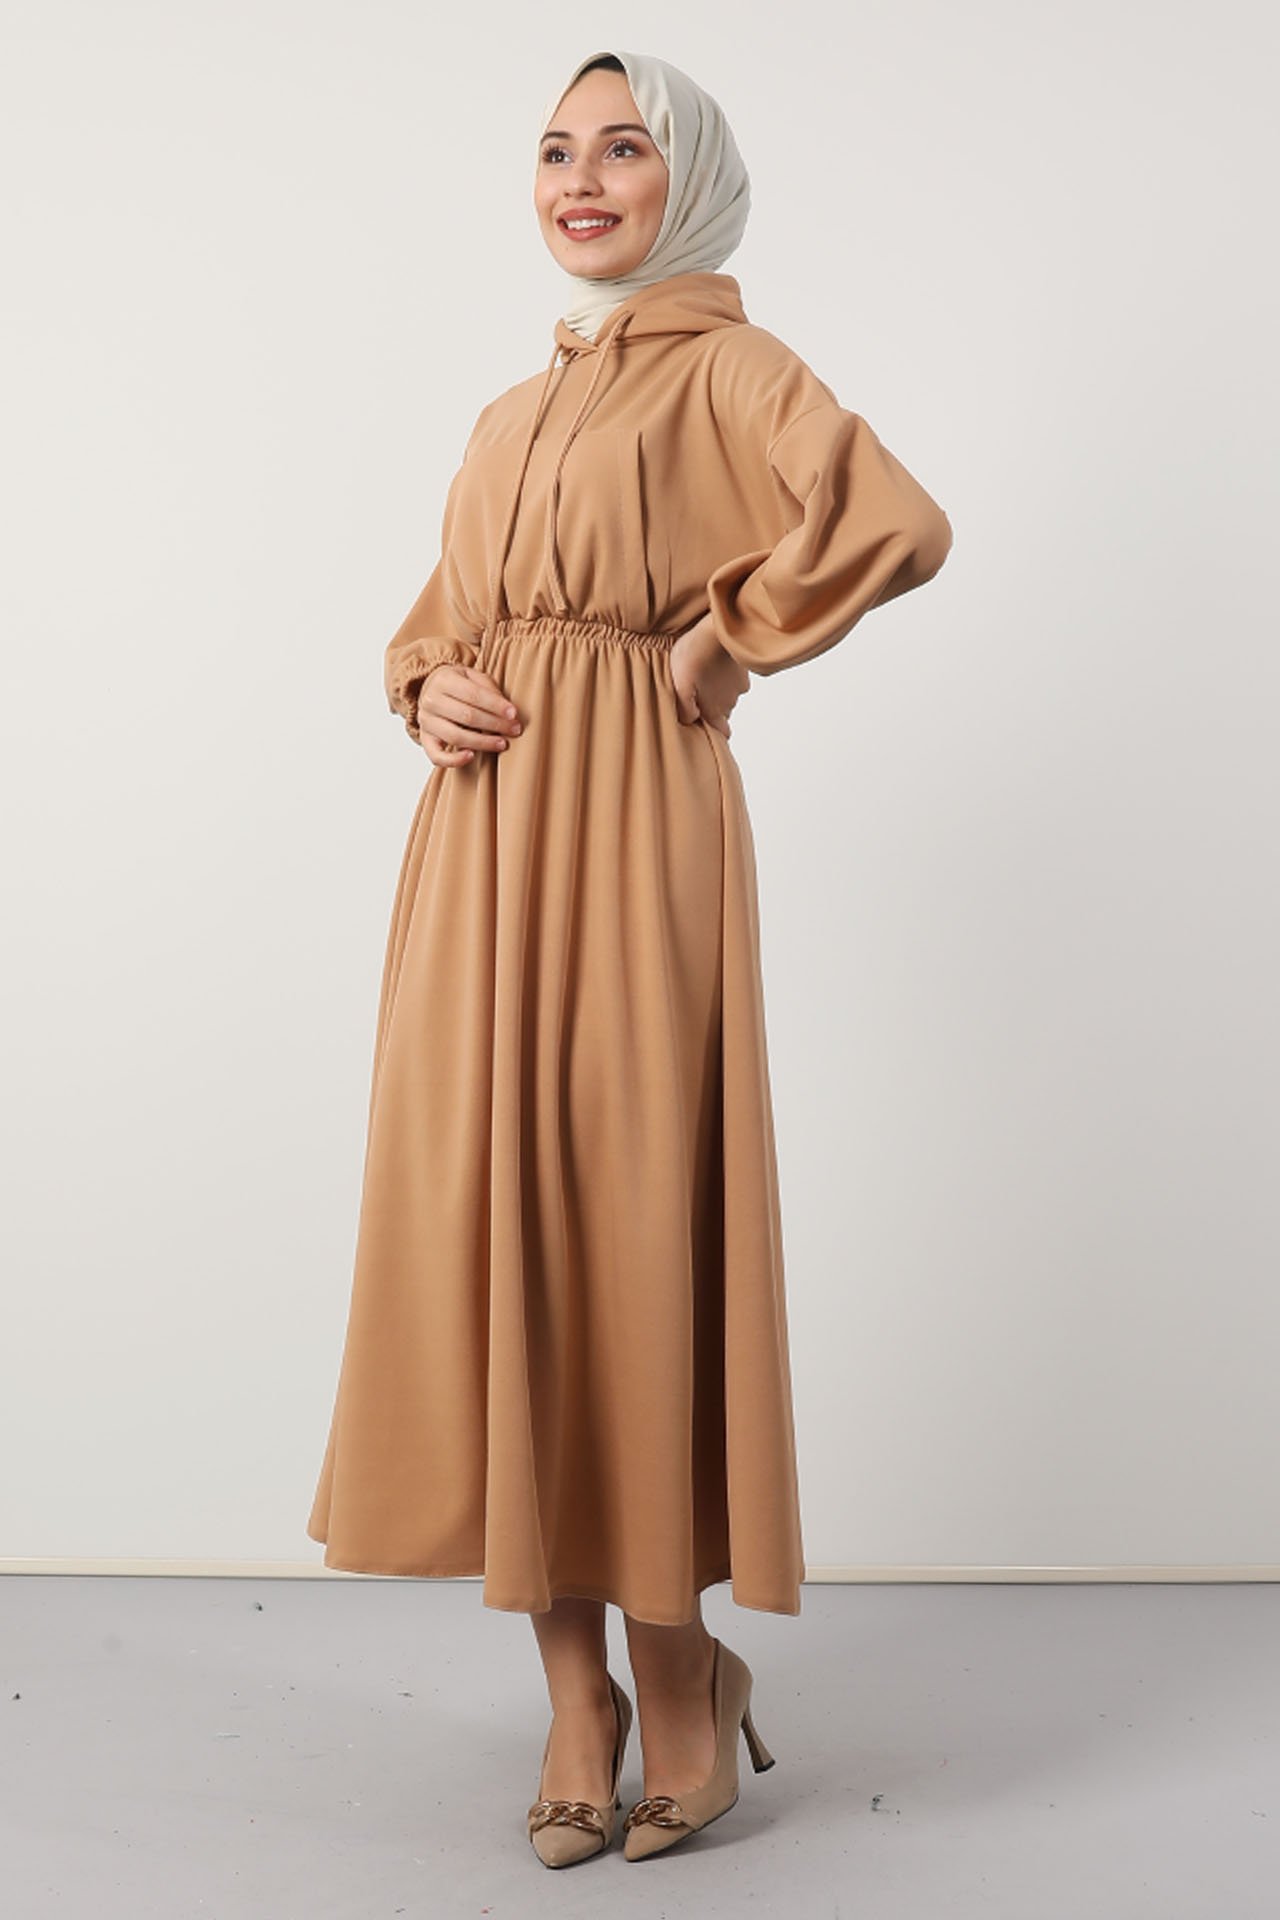 GİZAGİYİM - Göğsü Cepli Kapüşonlu Elbise Bisküvi